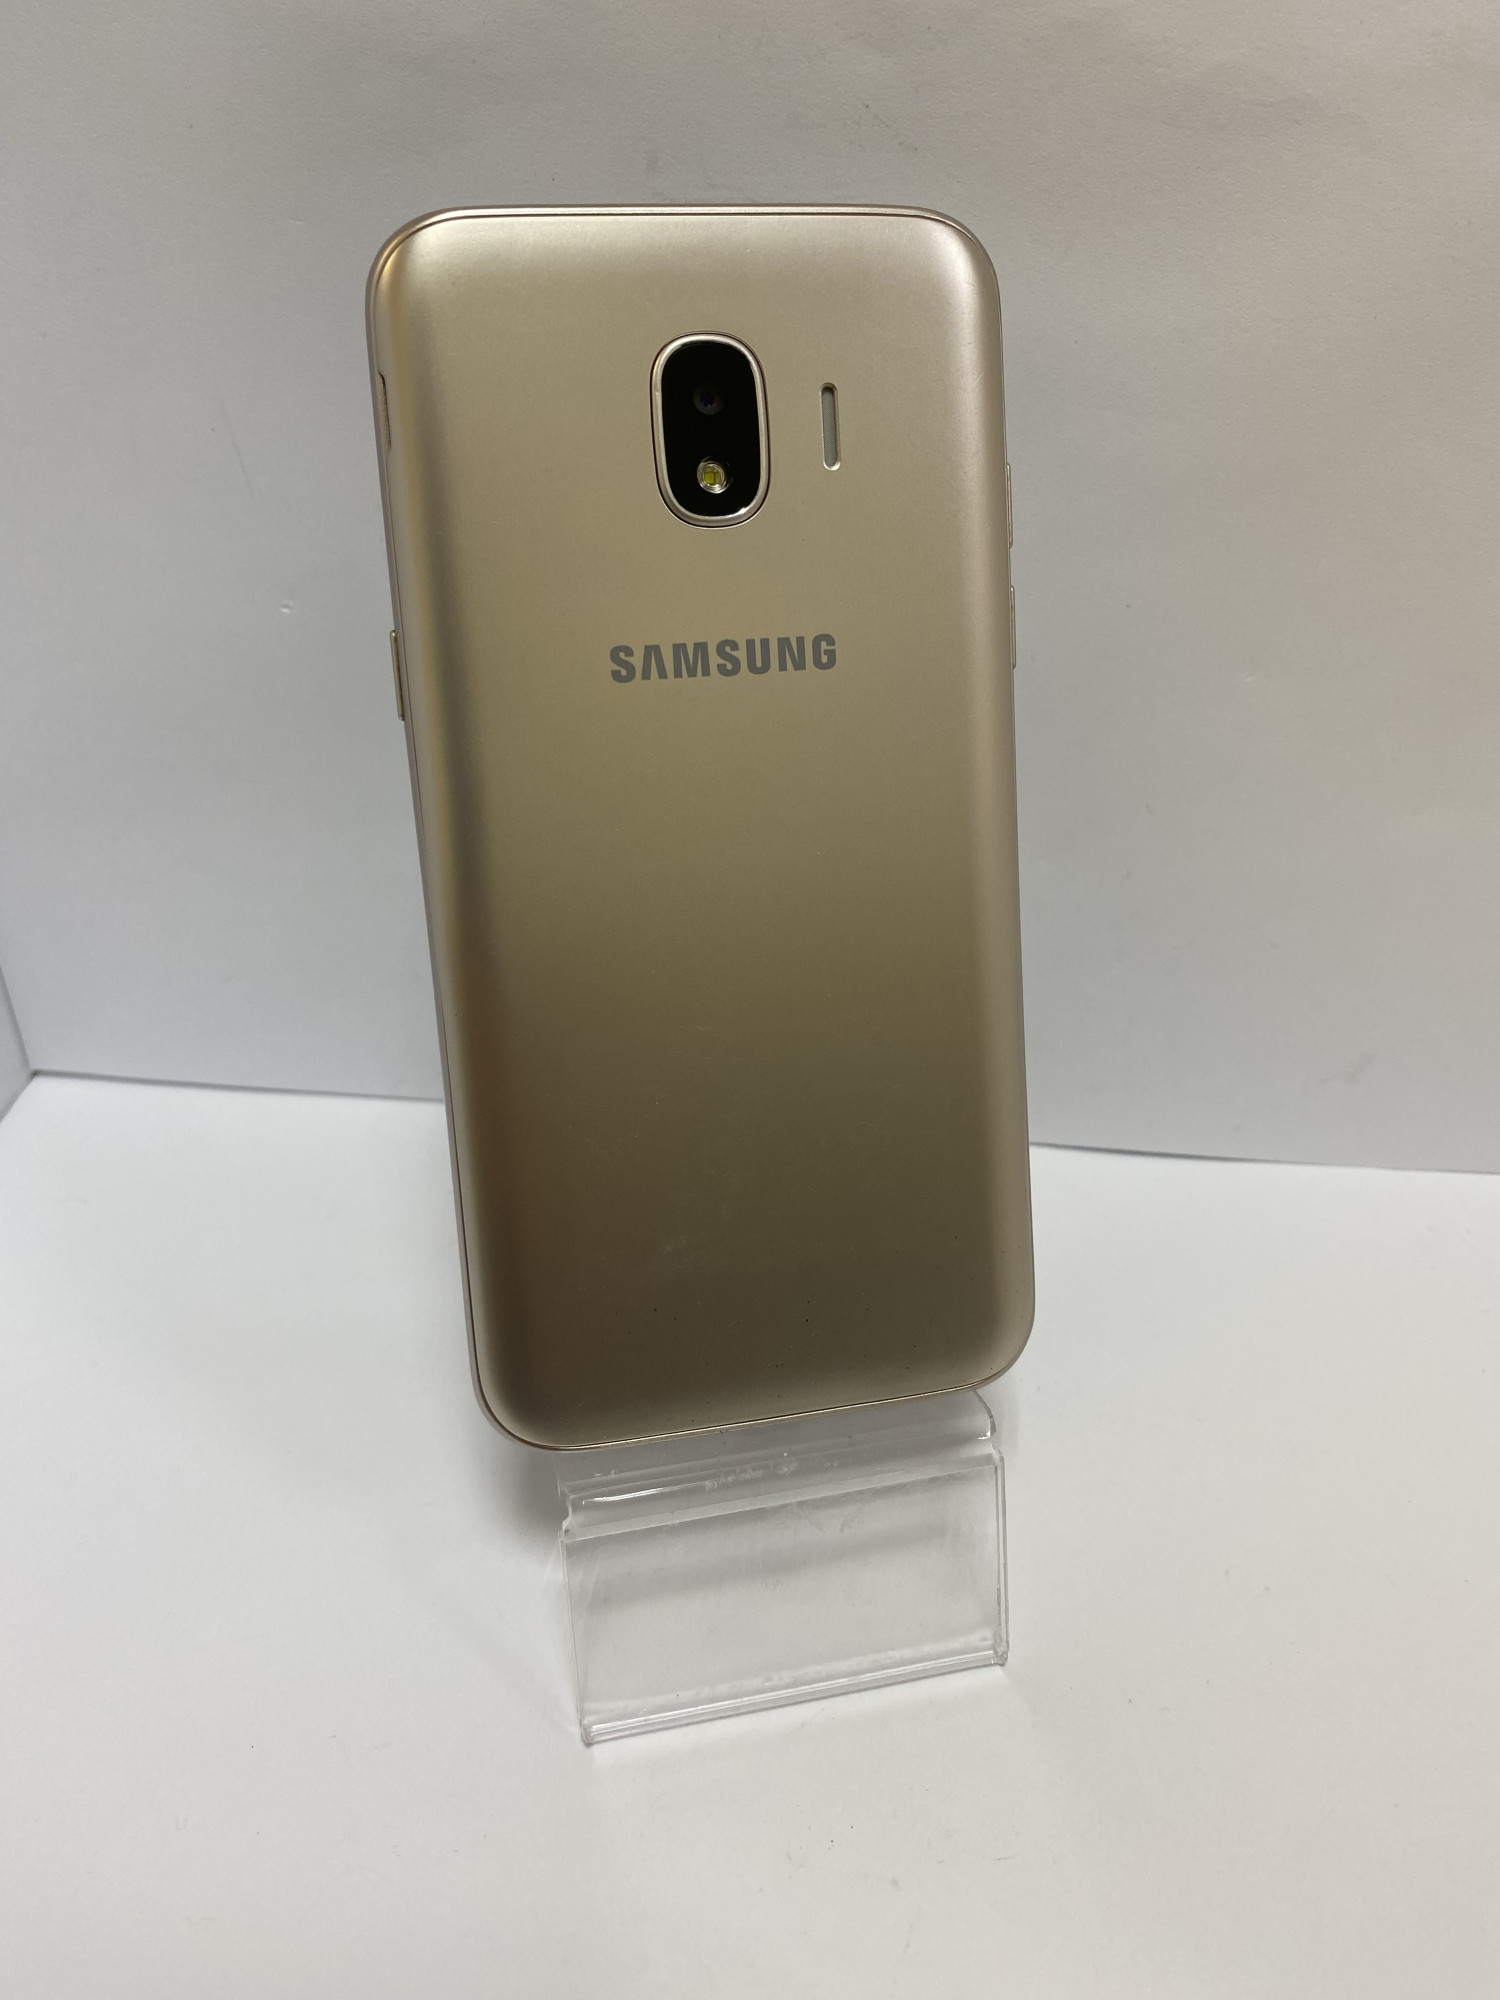 Samsung Galaxy J2 2018 (SM-J250F) 1/16Gb 1